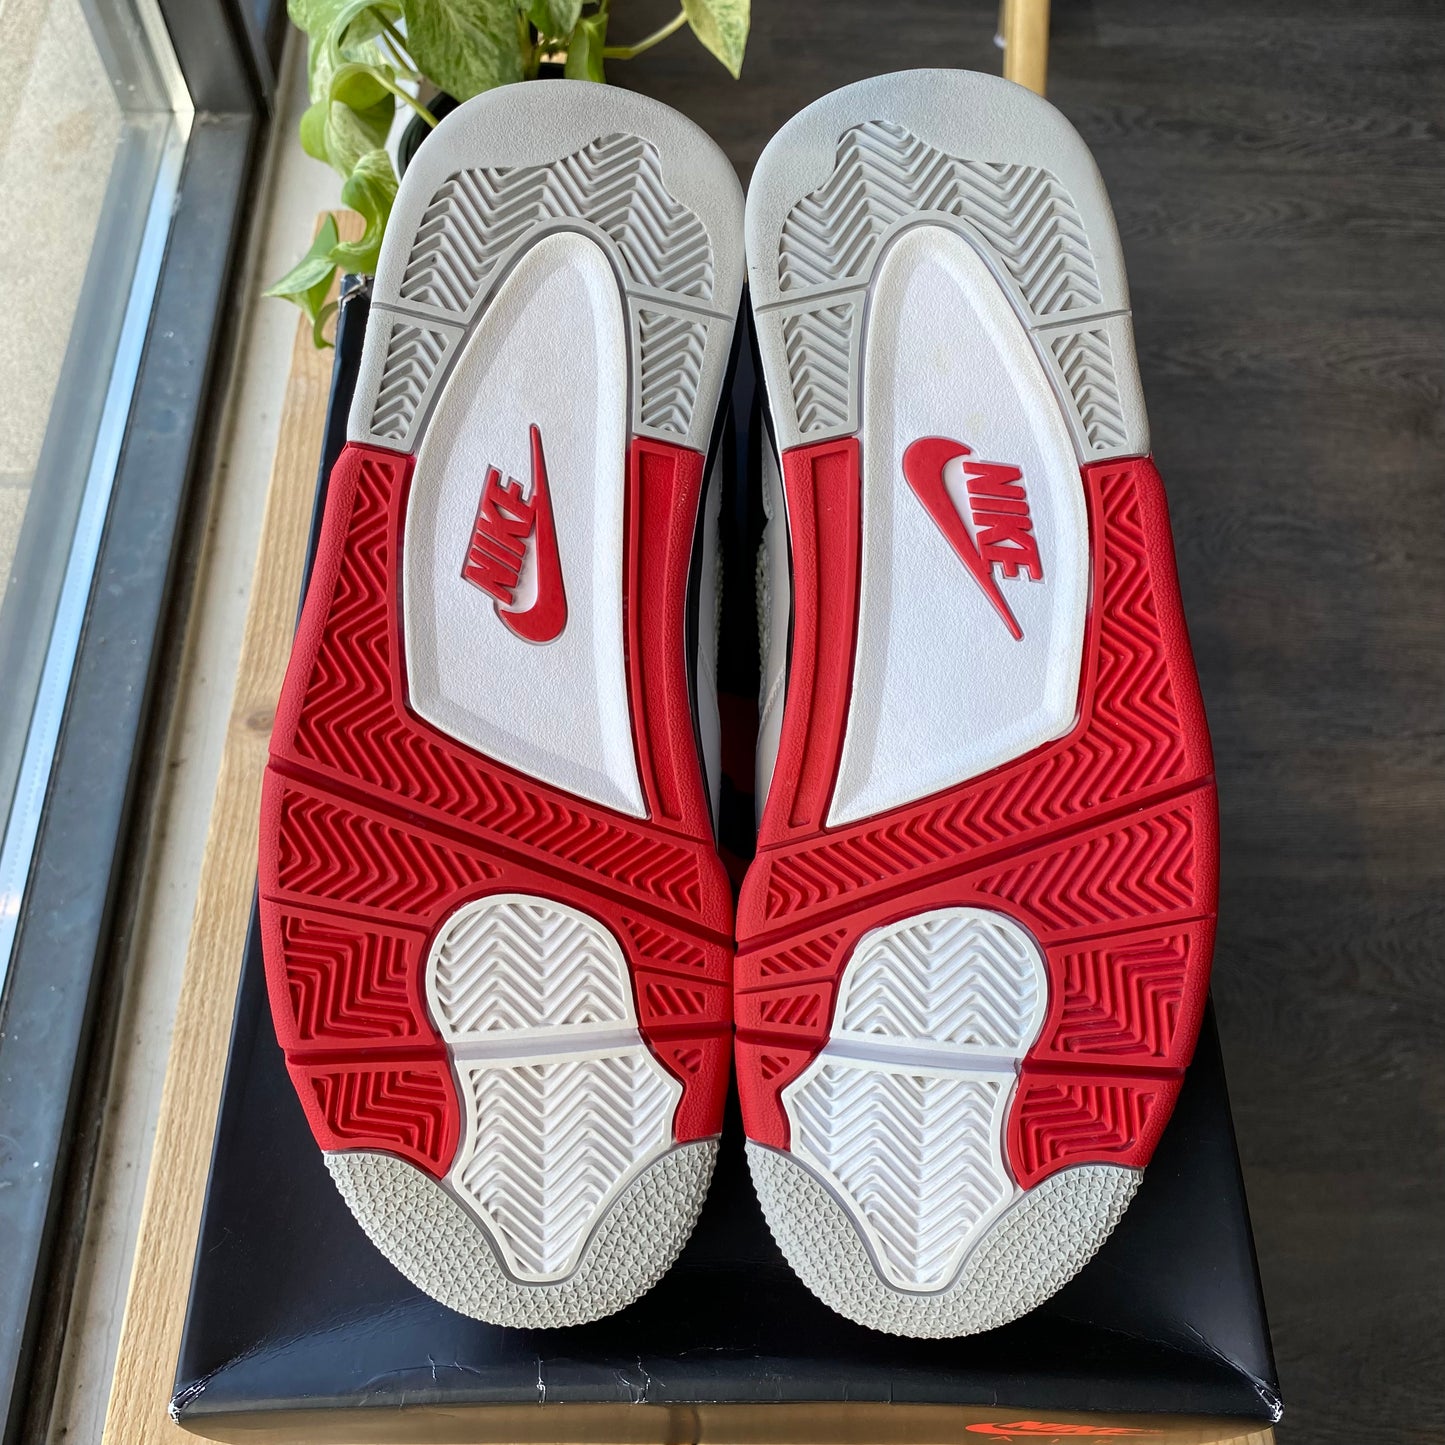 Air Jordan 4 "Fire Red" Size 9.5